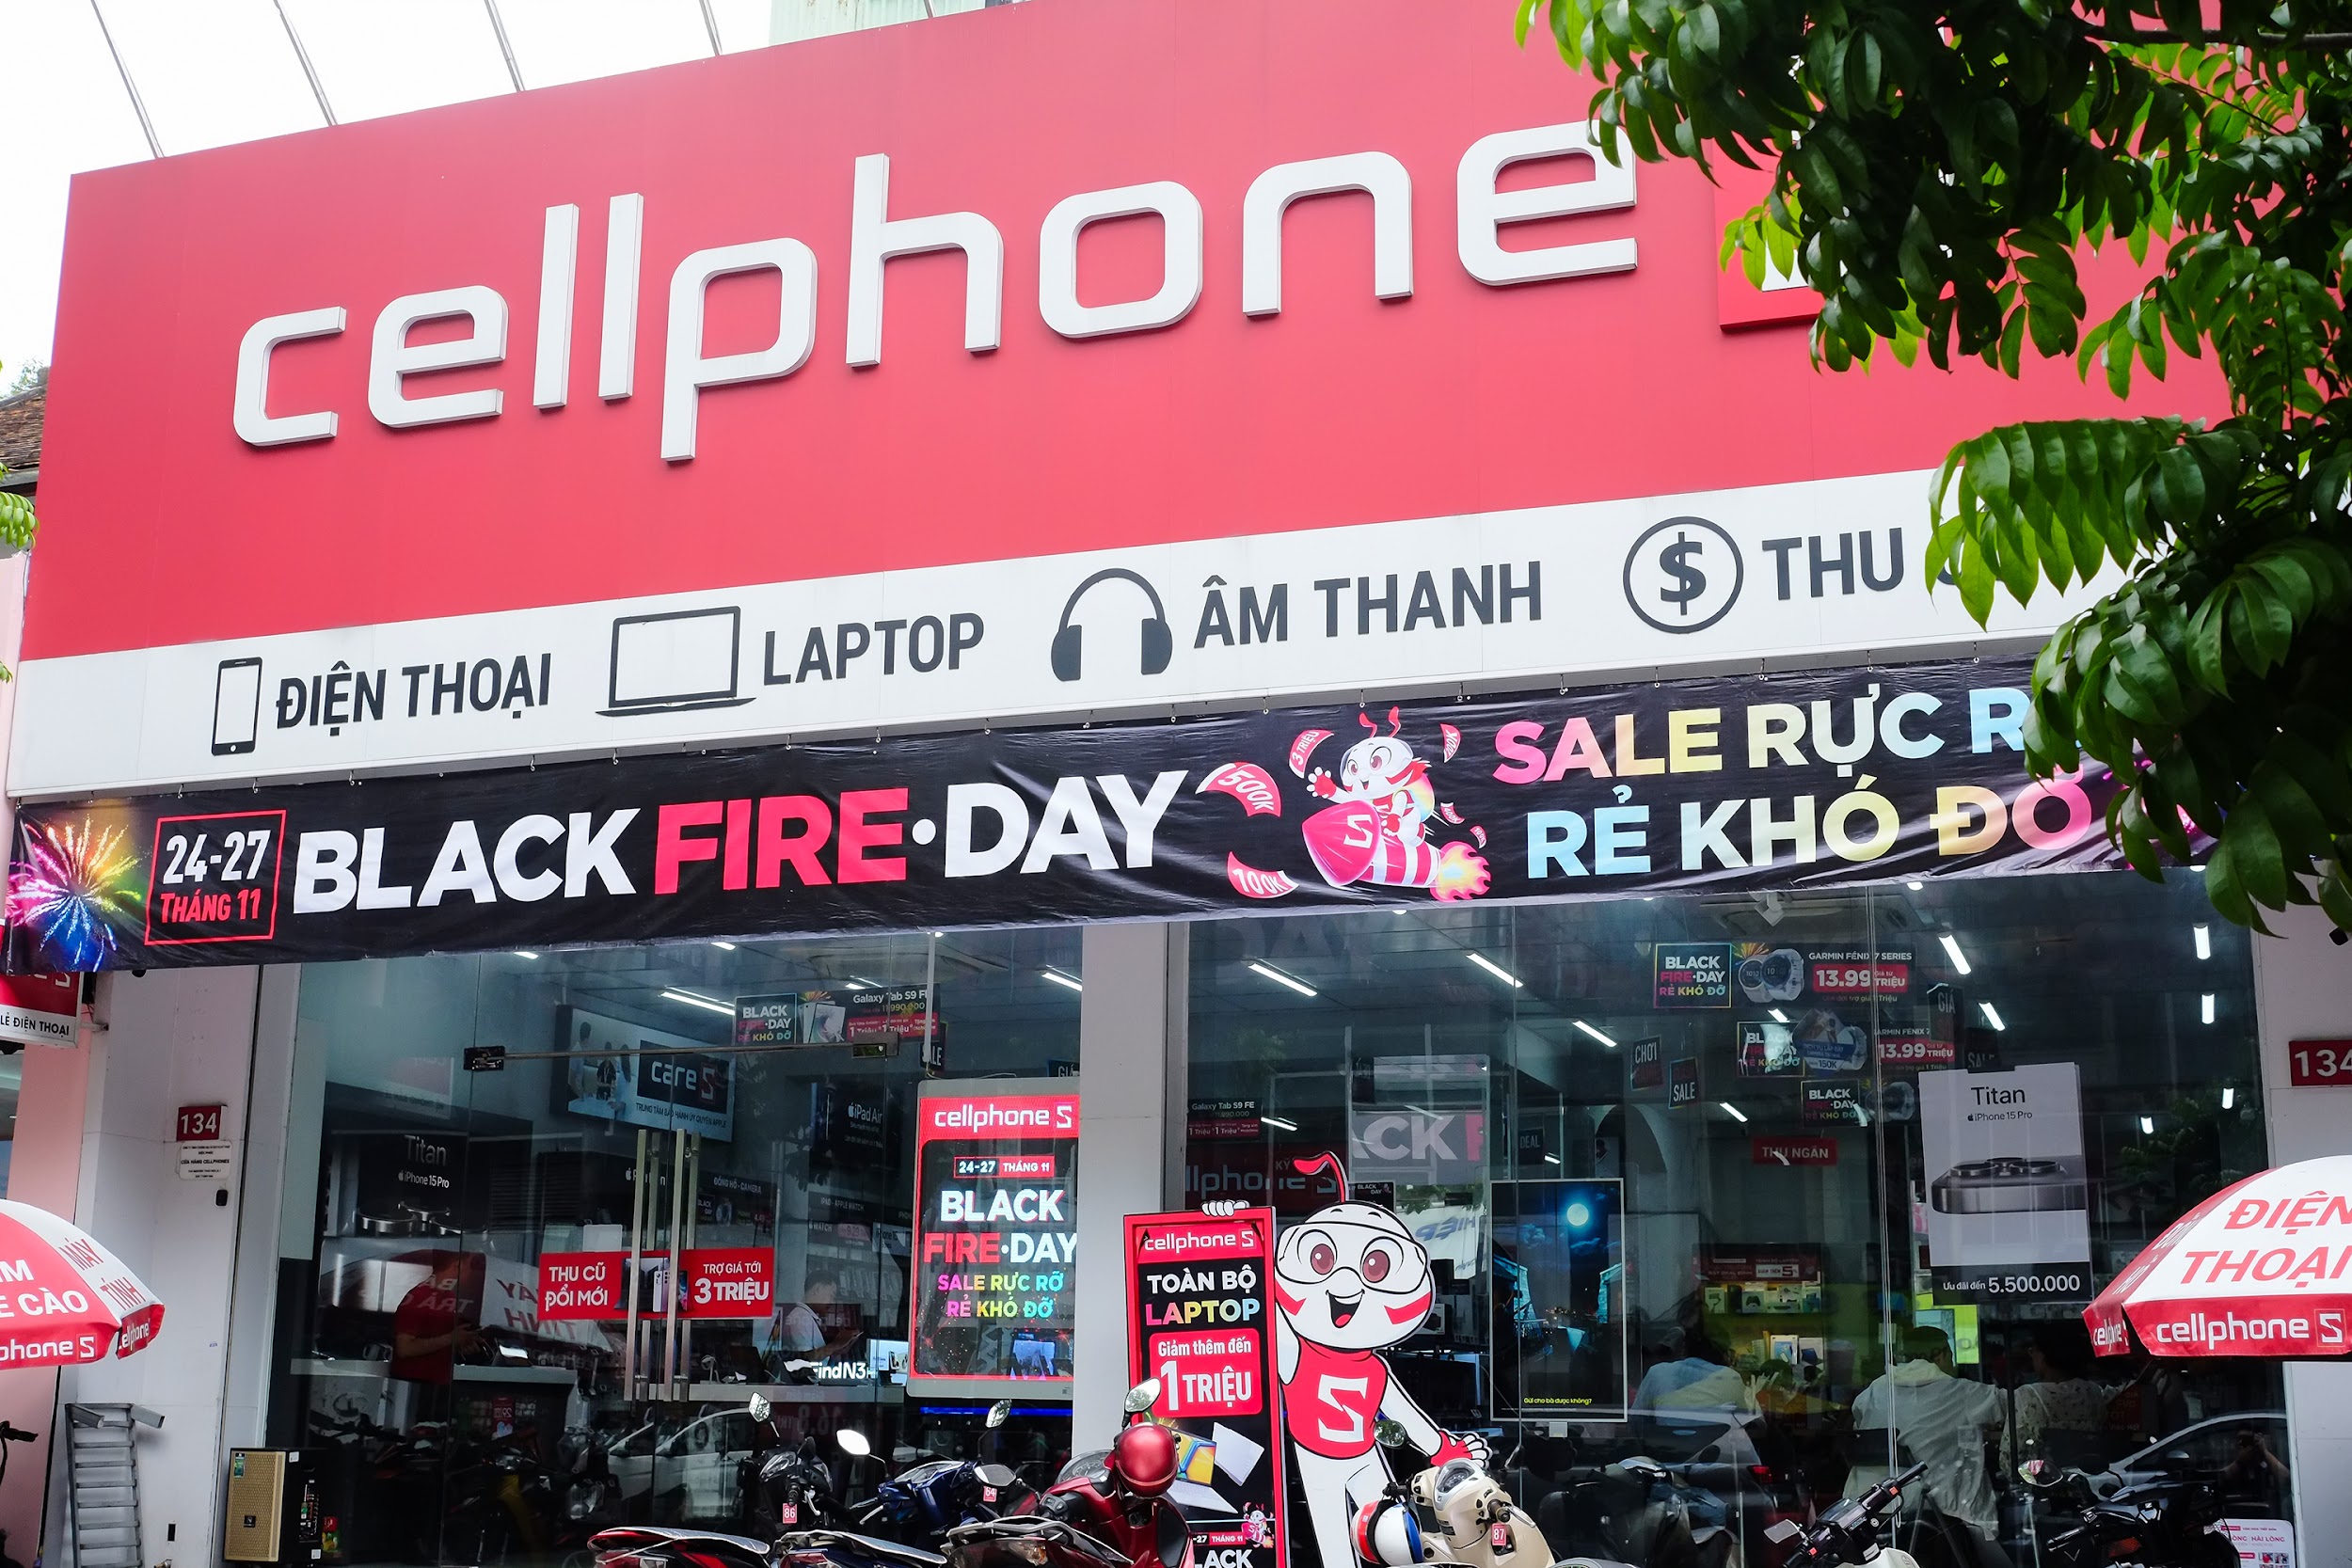 CellphoneS bùng nổ “Sale rực rỡ - rẻ khó đỡ” trong 4 ngày Black Fire-Day - 1